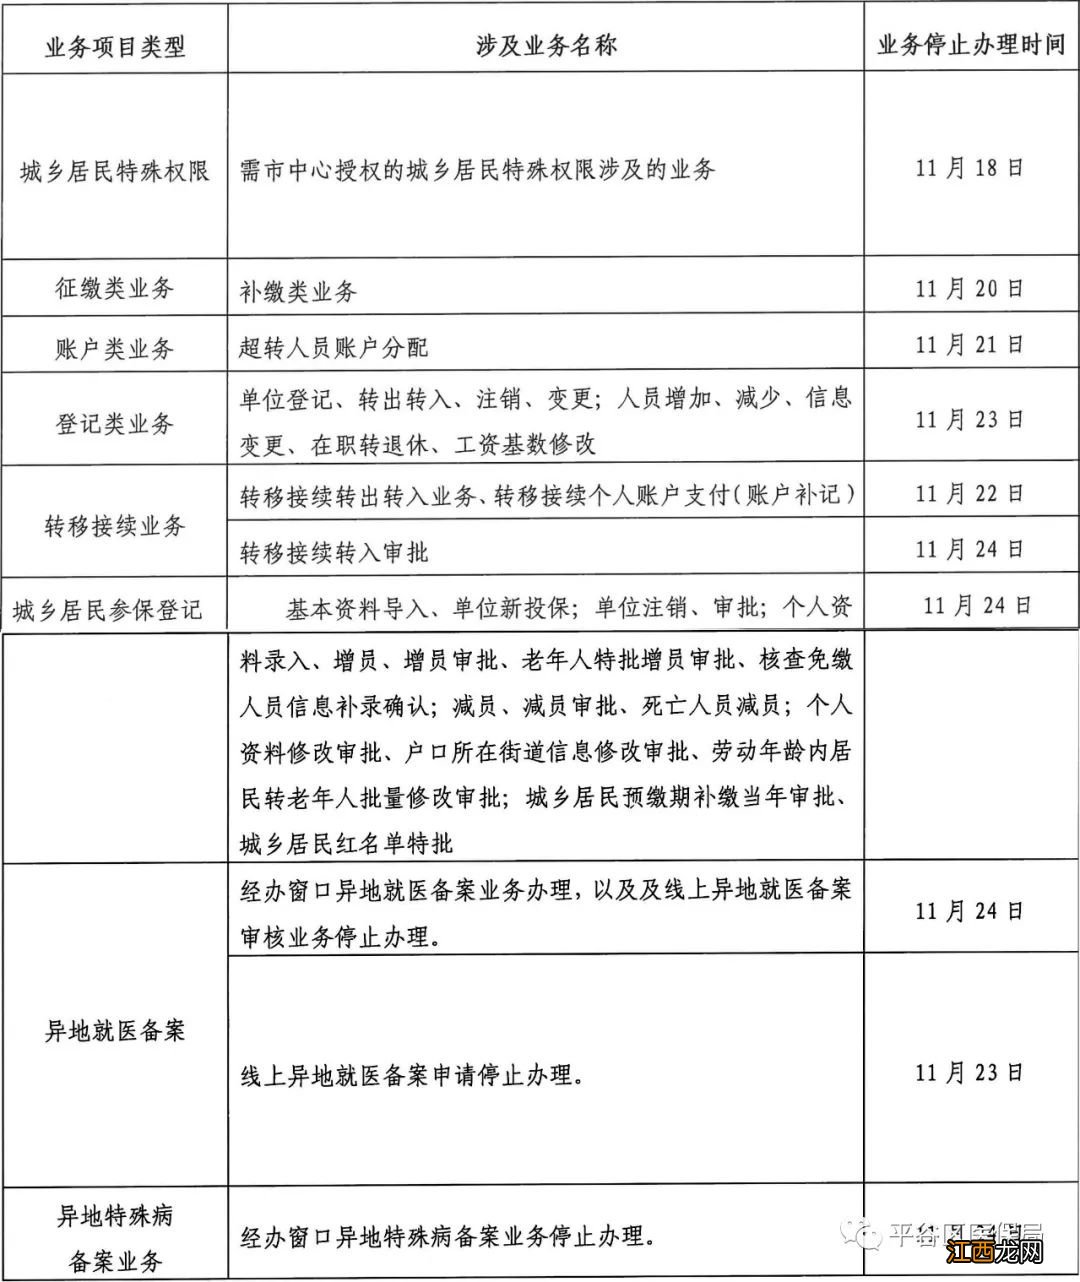 北京平谷区医保局医保信息平台切换的通知